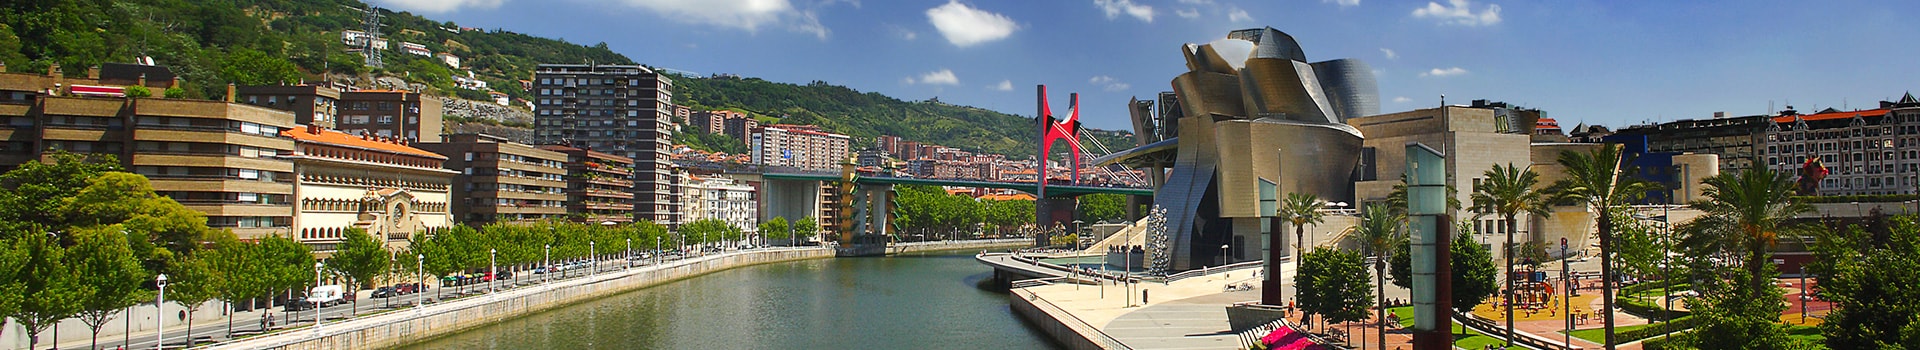 La Corogne - Bilbao